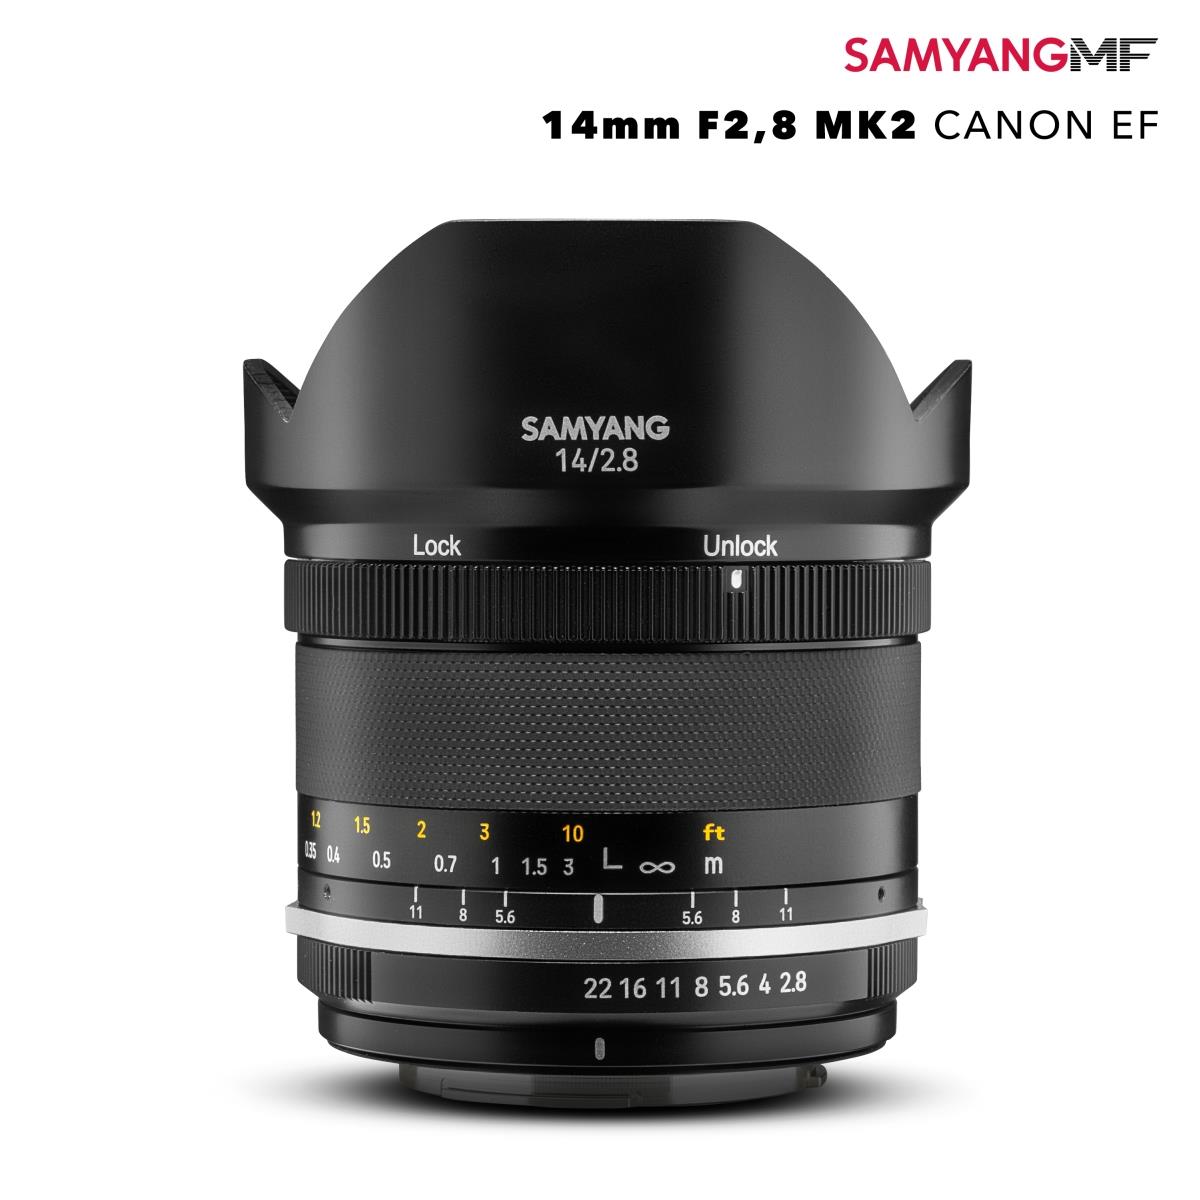 Samyang MF 14mm f2, 8 mk2 Canon EF | eBay